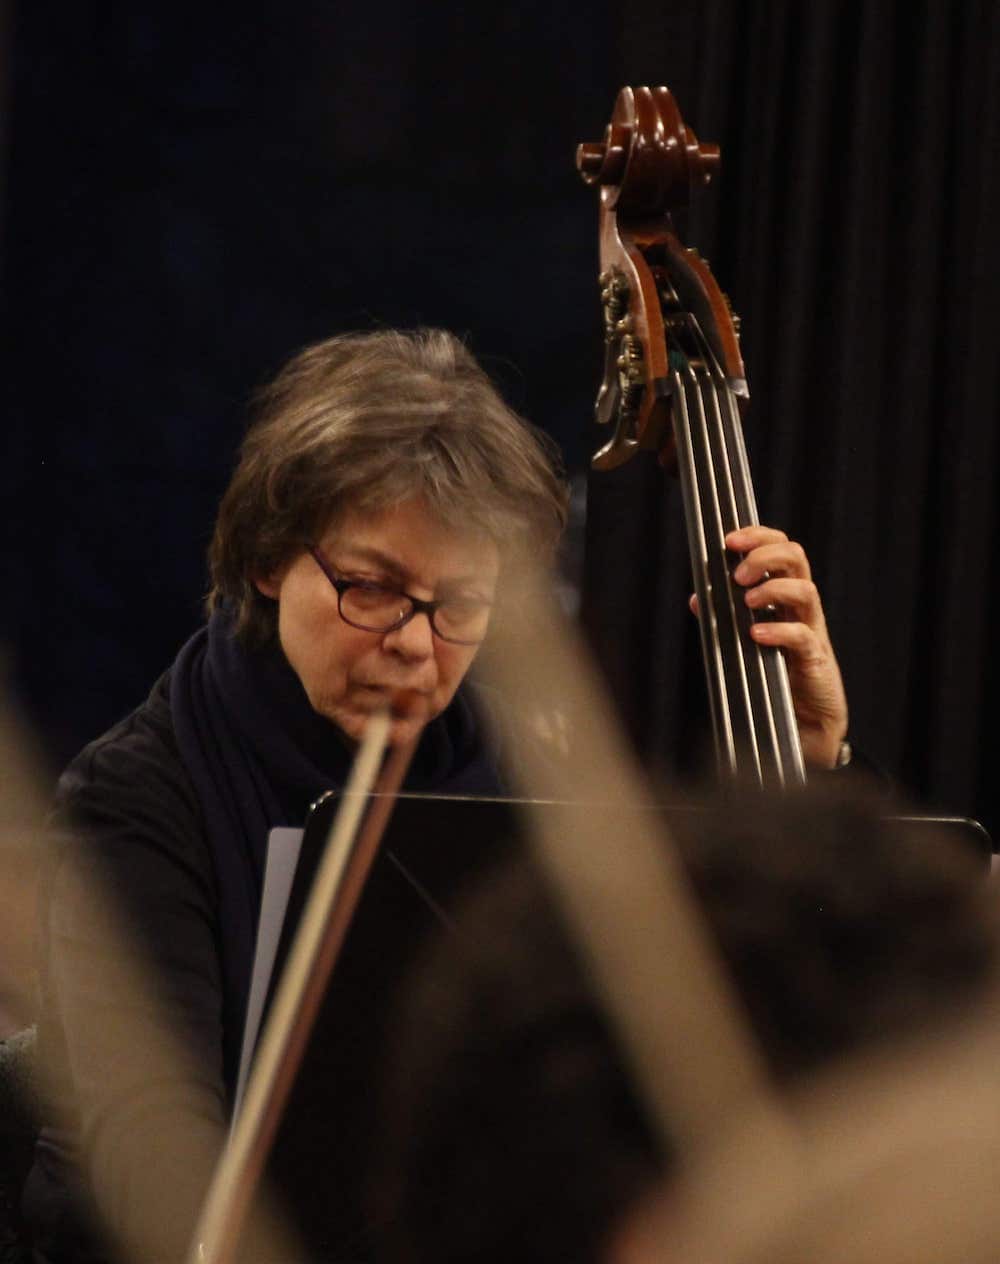 Annette Hildebrandt mit einem Kontrabass beim spielen mit dem Frauenorchesterprojekt